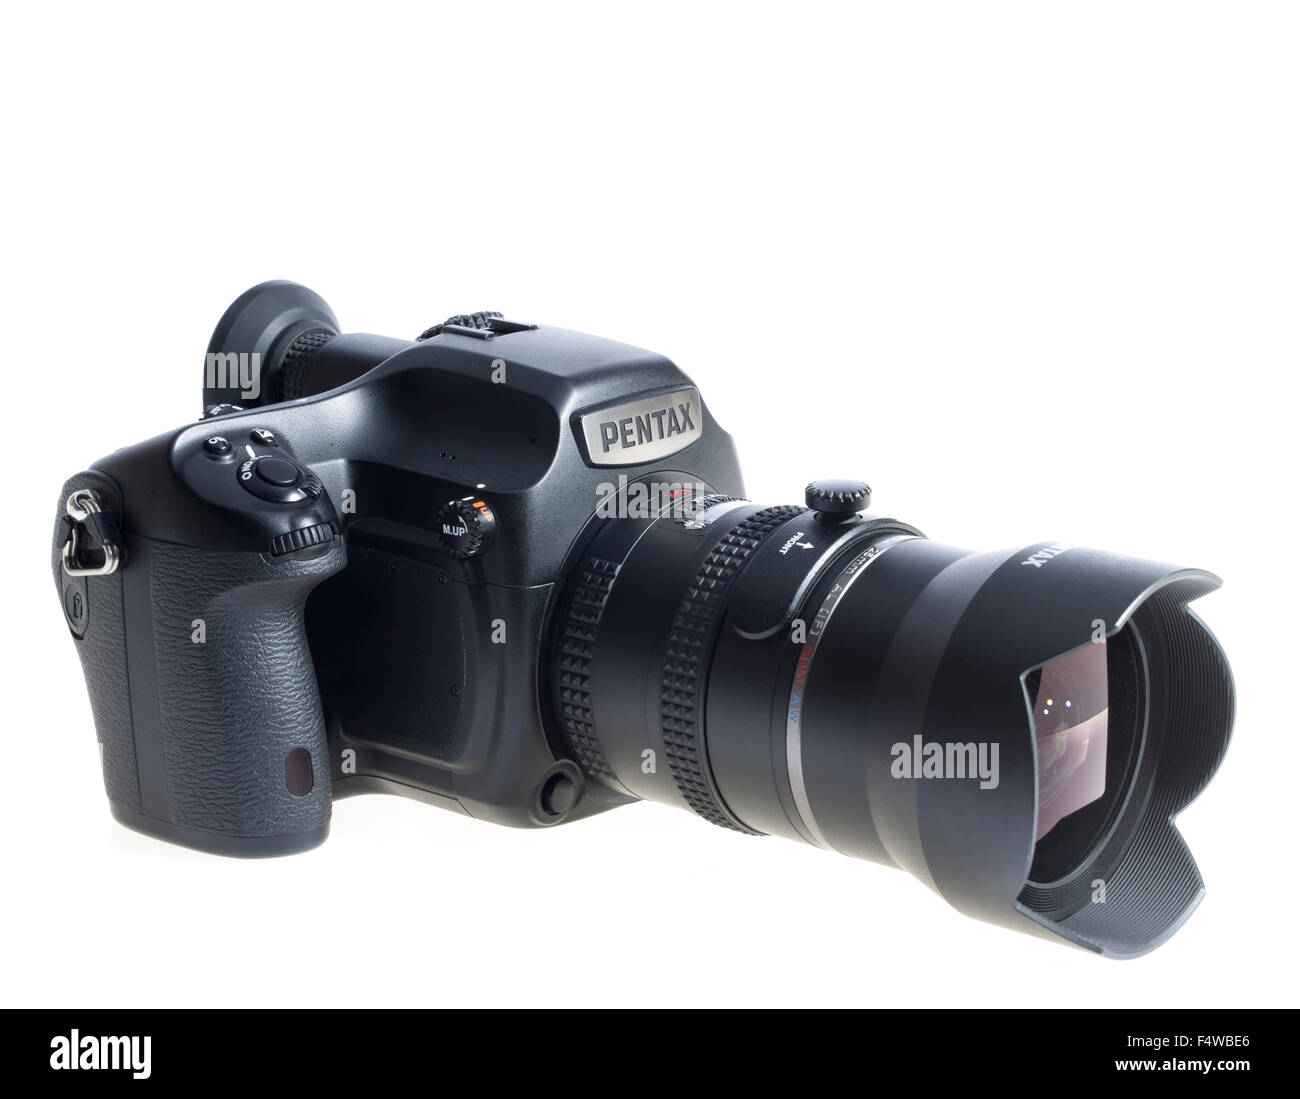 Pentax 645Z Medium Format SLR Digitalkamera mit 25mm Weitwinkel-Objektiv 53MP. Professionelle Fotografie-System. Veröffentlichten 2014 Stockfoto